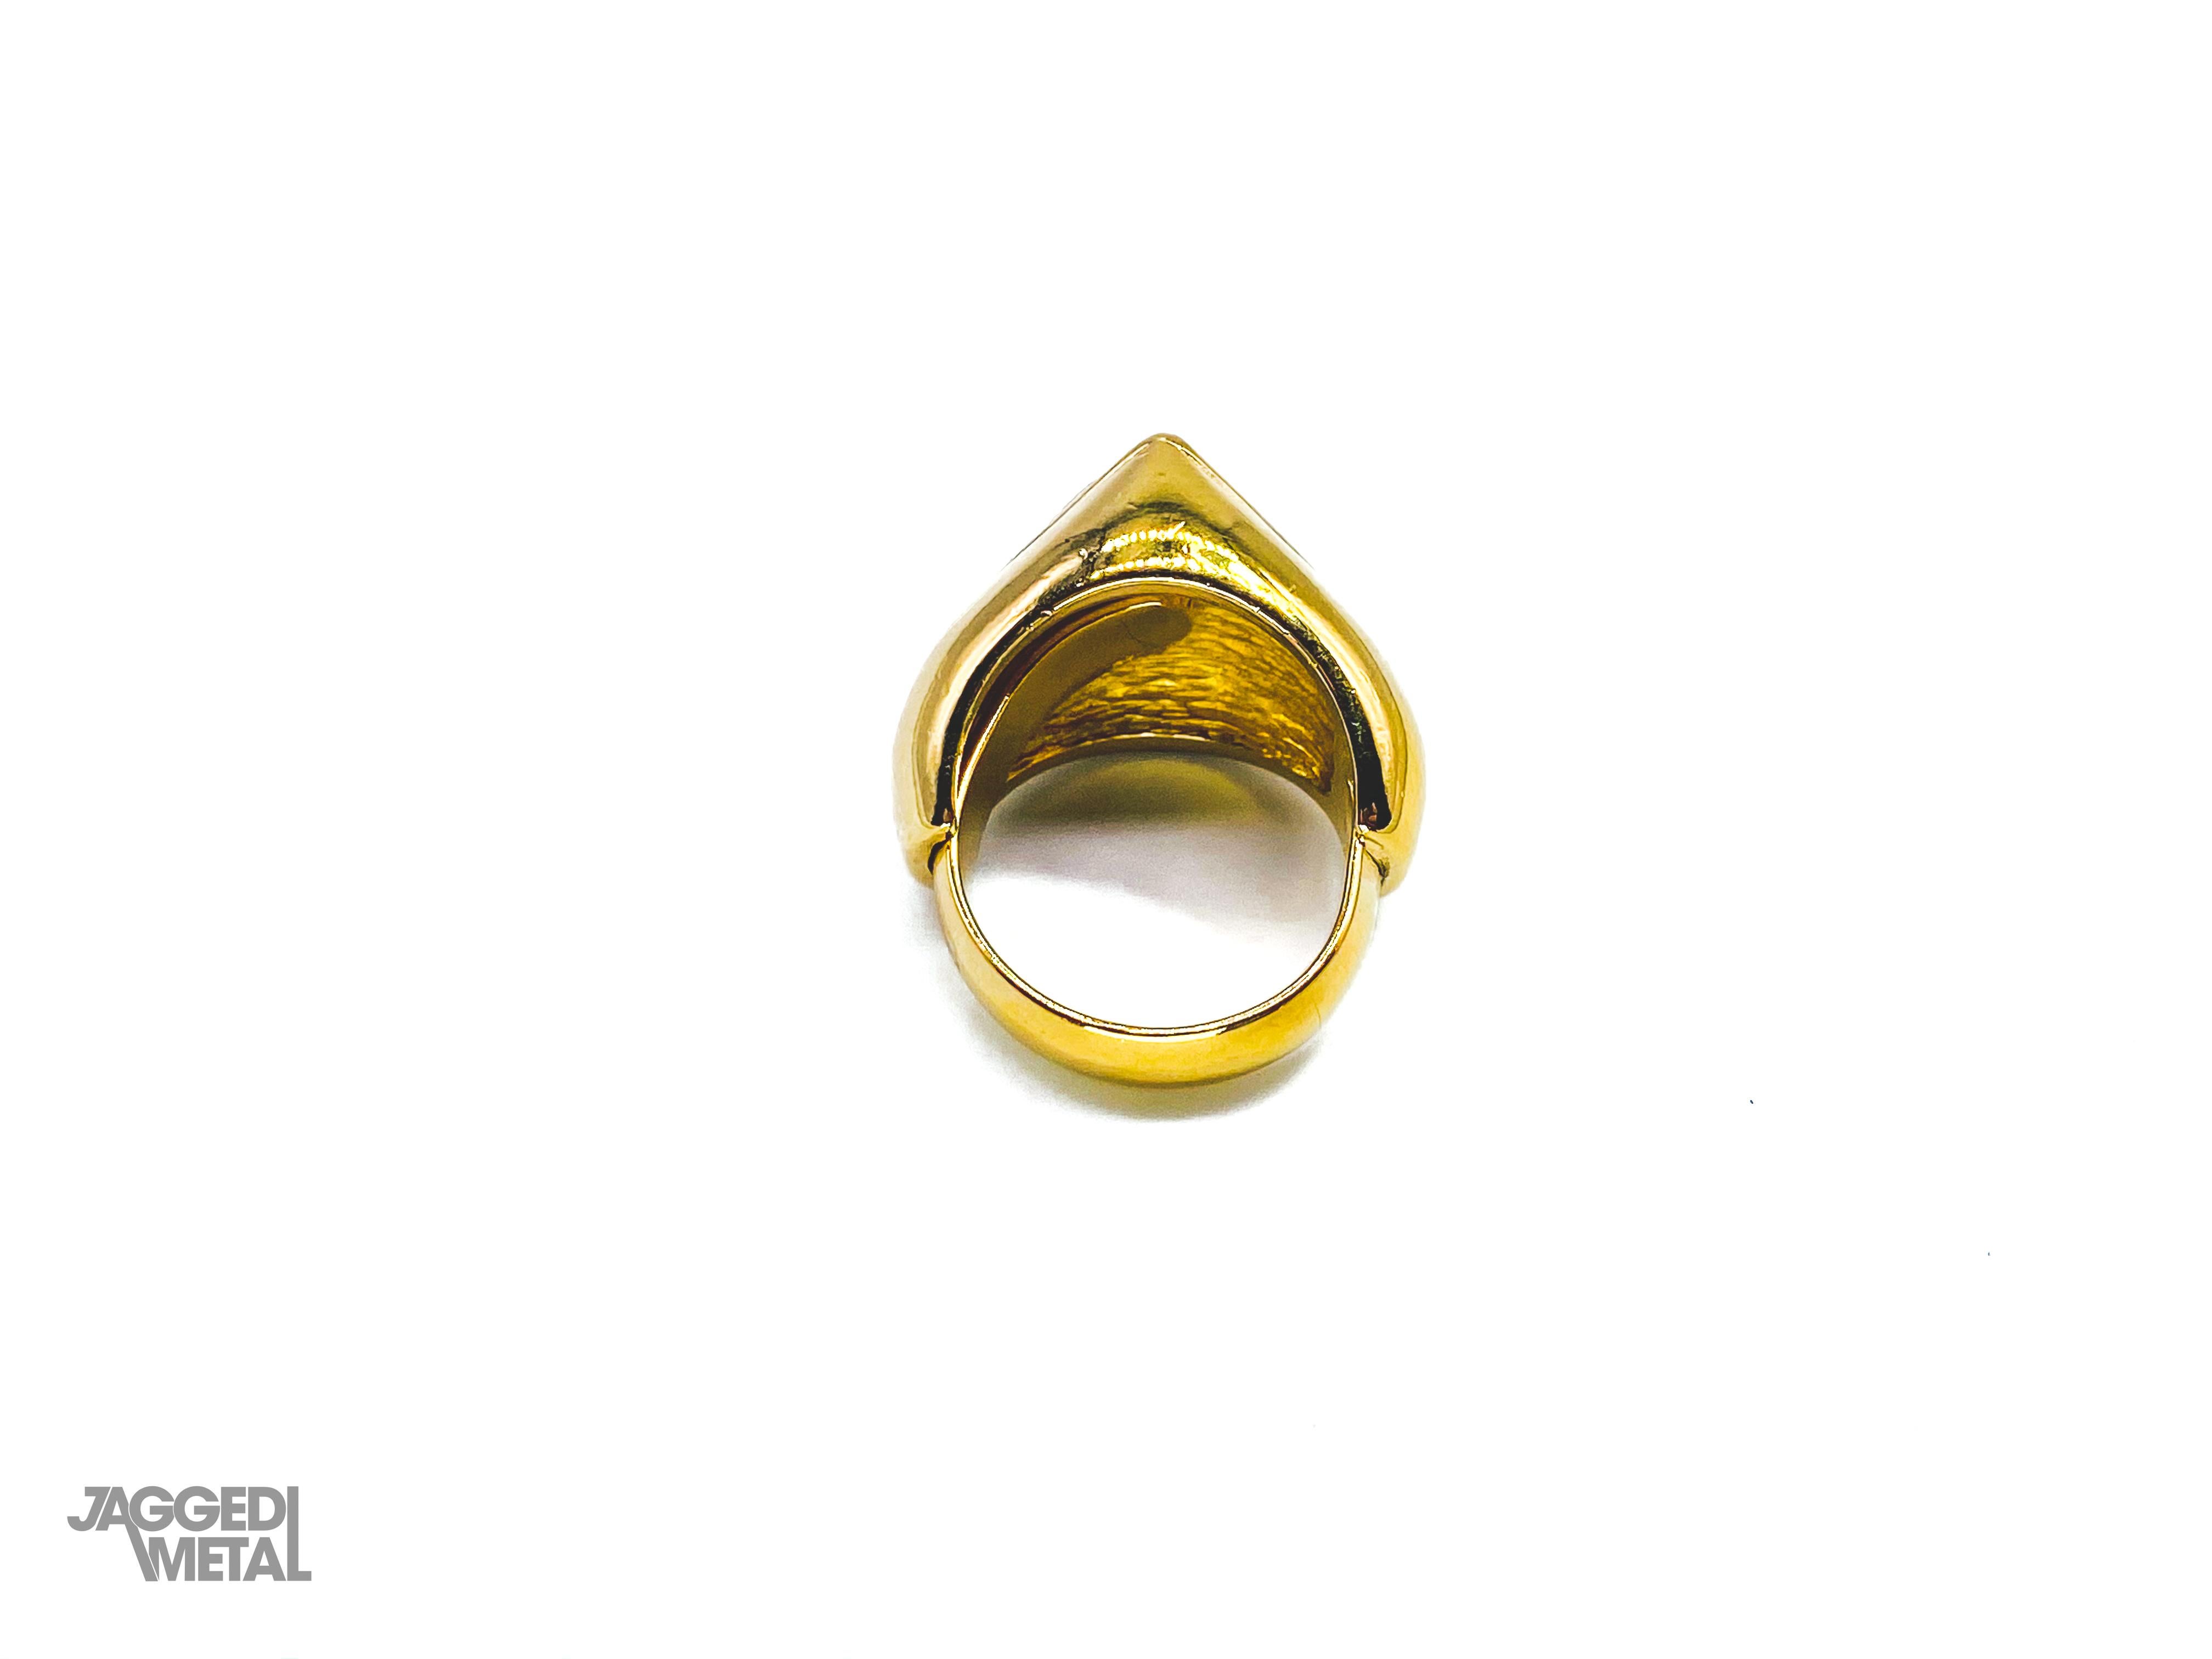 dior vintage ring